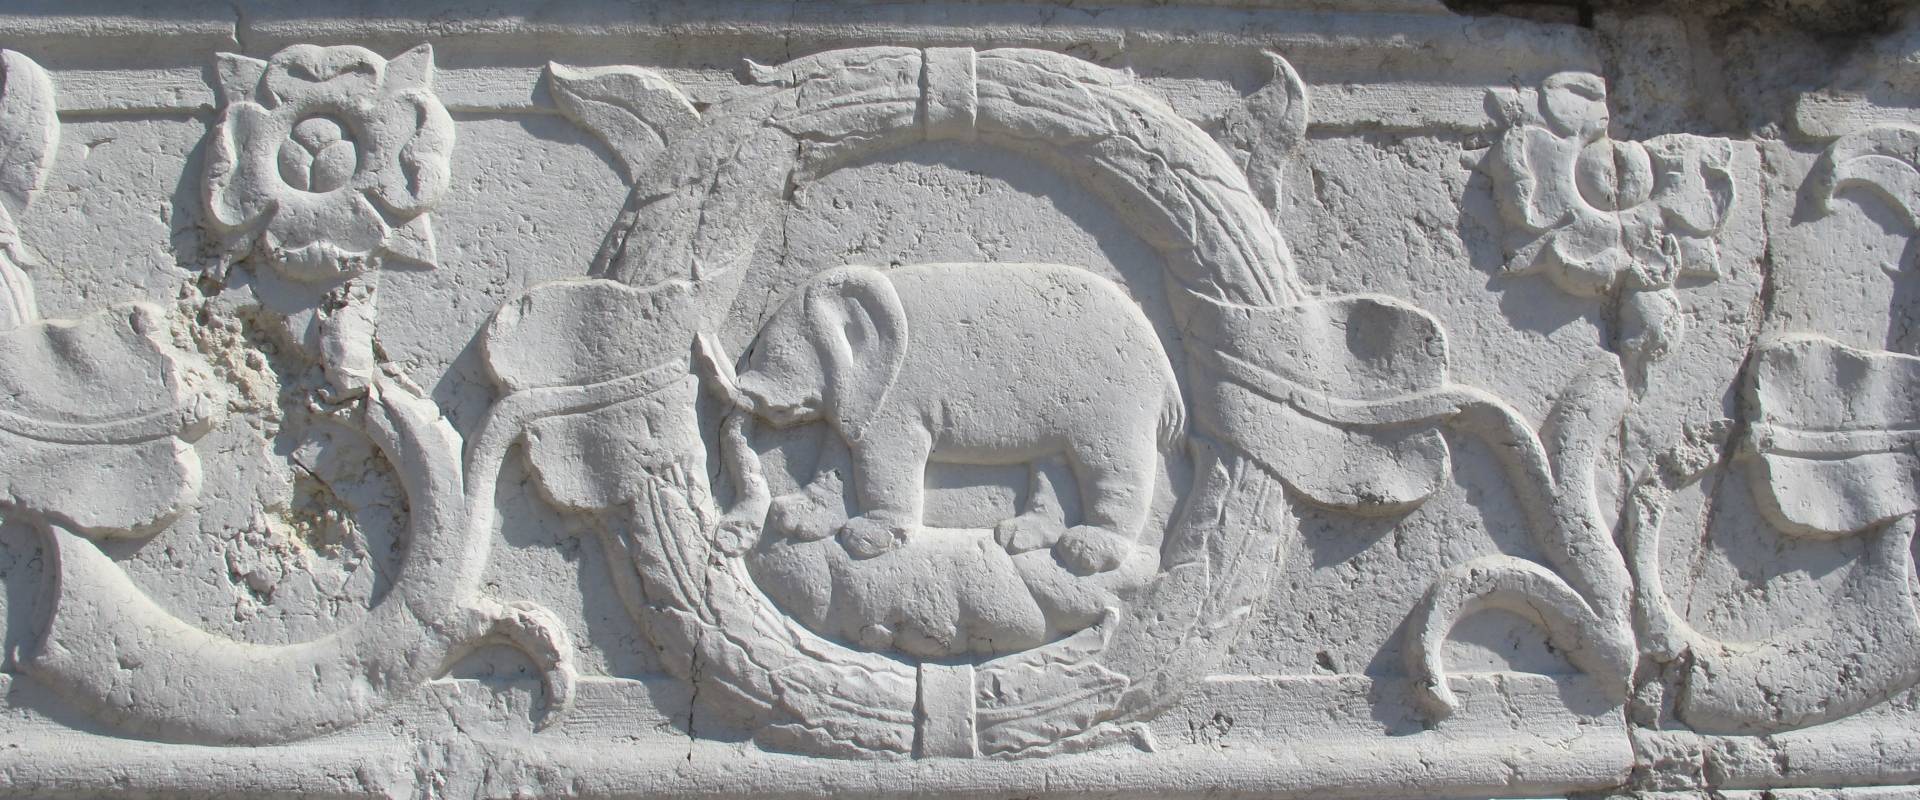 Tempio malatestiano, esterno, zoccolo, elefante malatesta 01 foto di Sailko